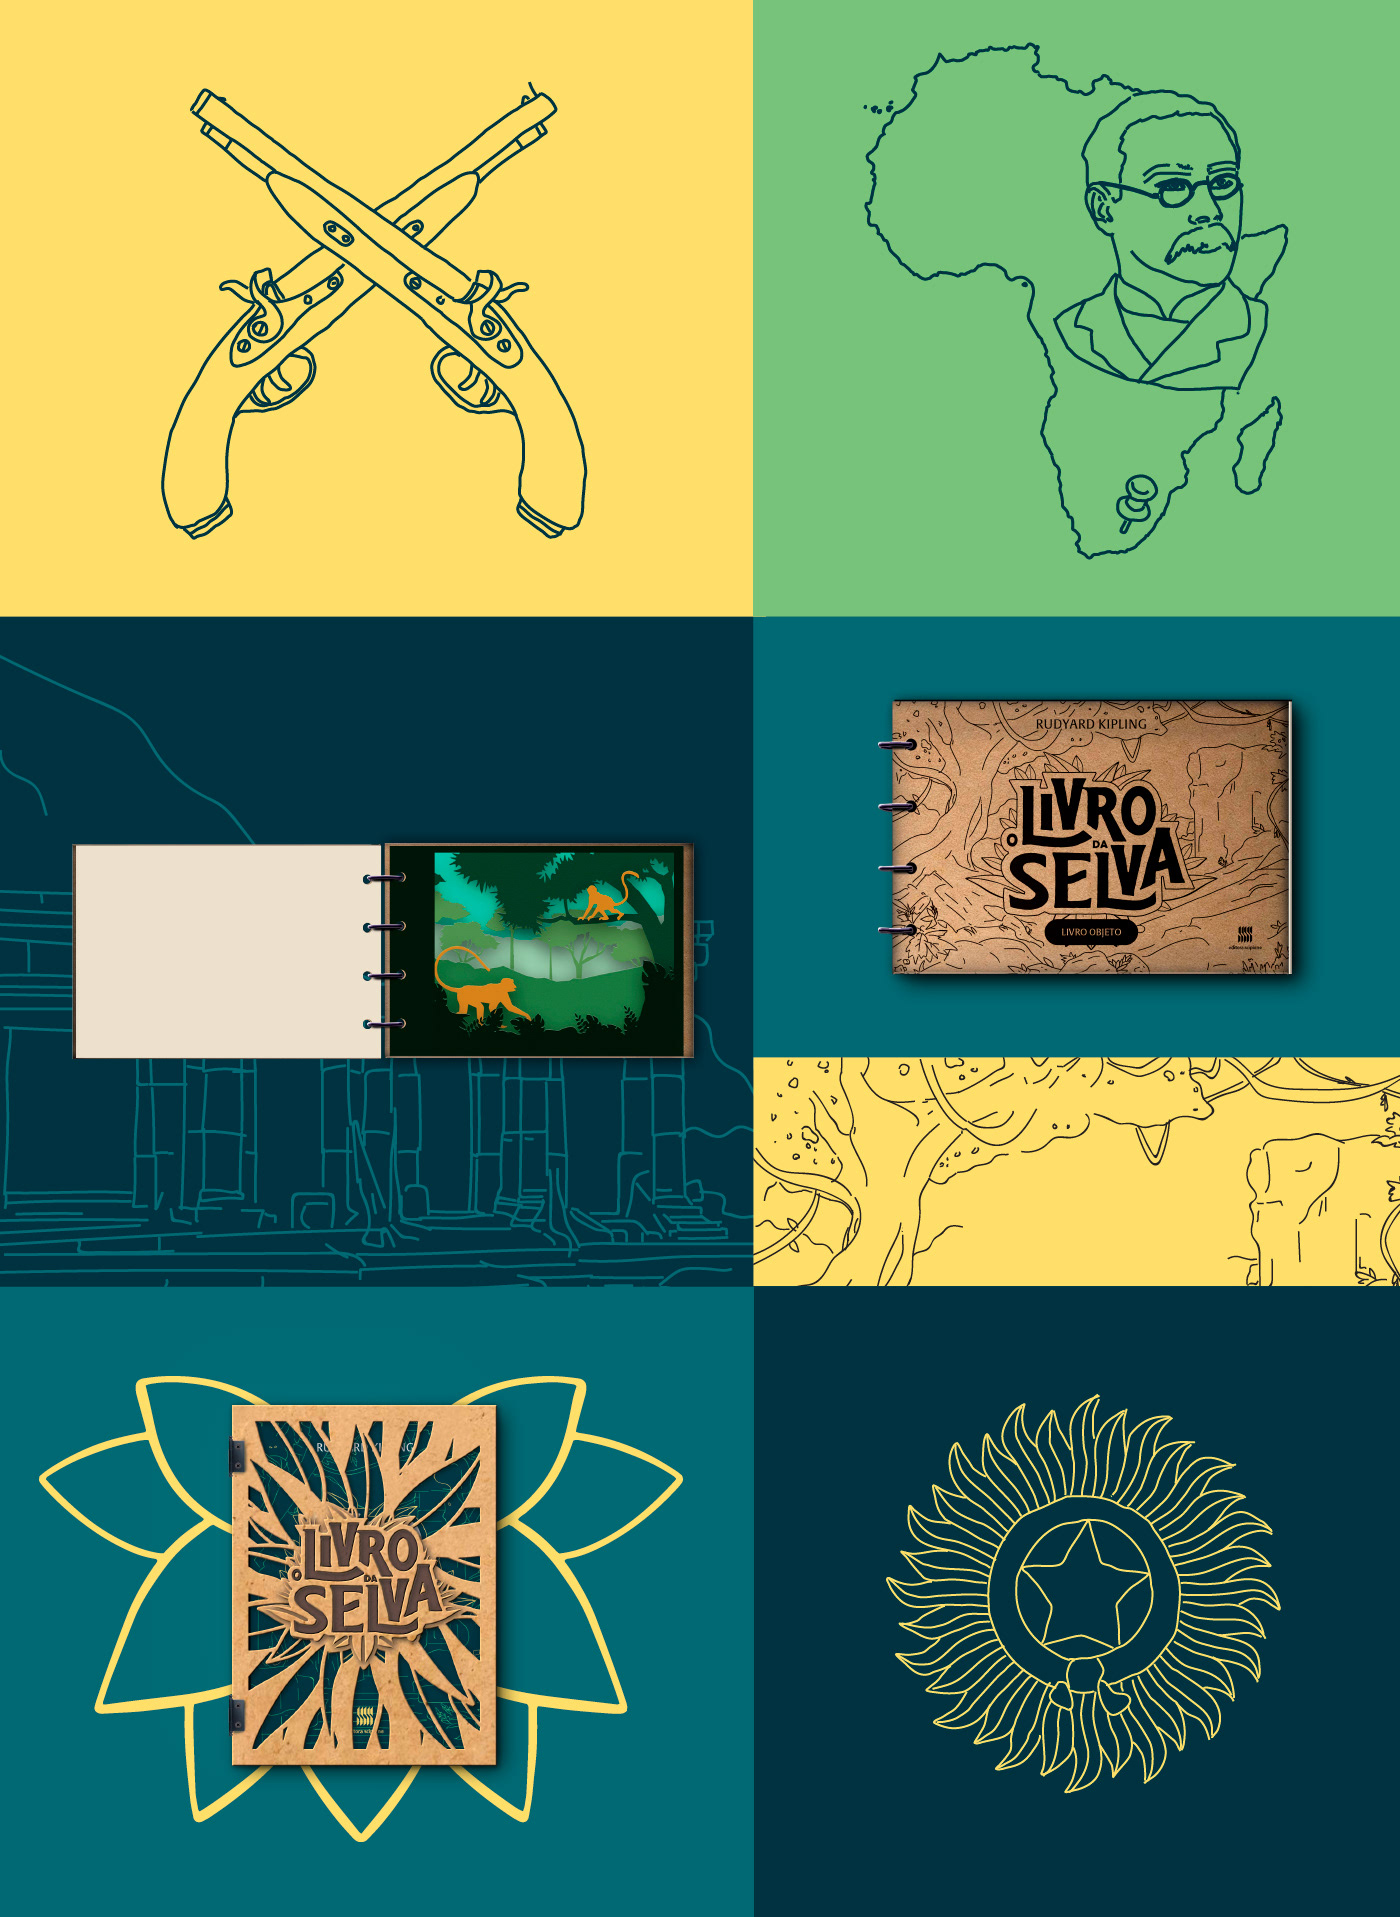 box criação design gráfico Livro Livro da selva selva